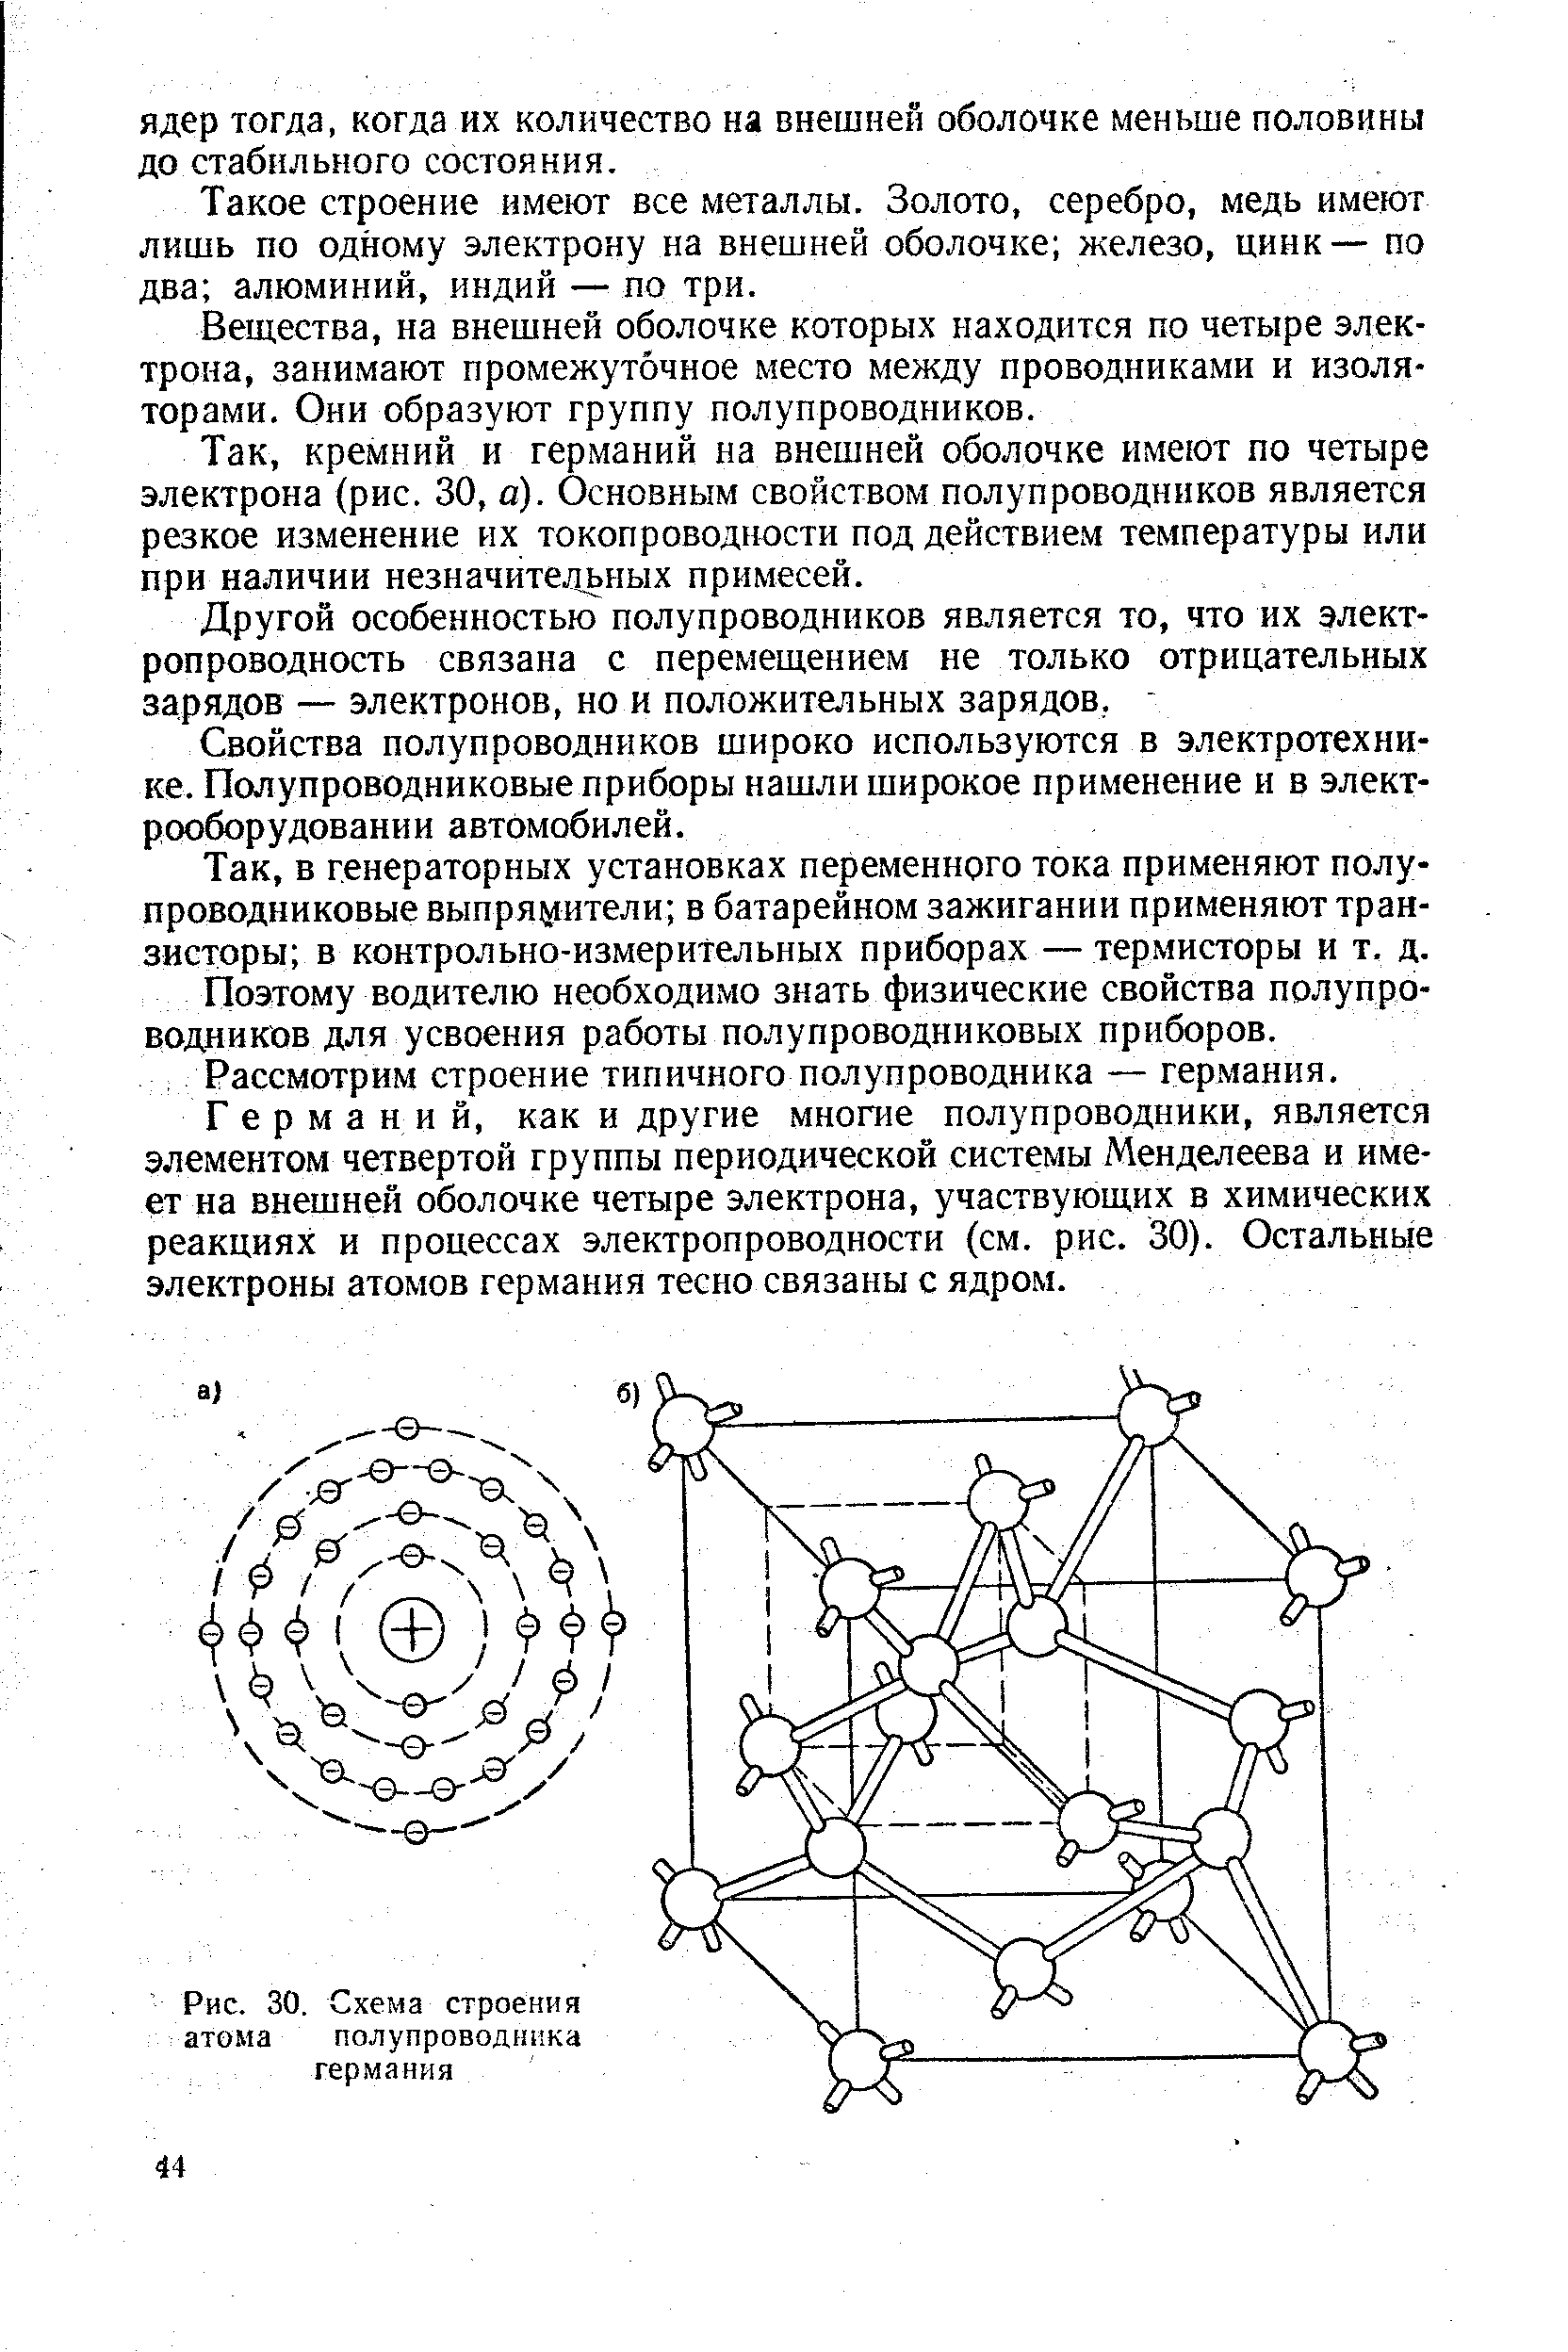 Рис. 30. Схема строения атома полупроводника германия
